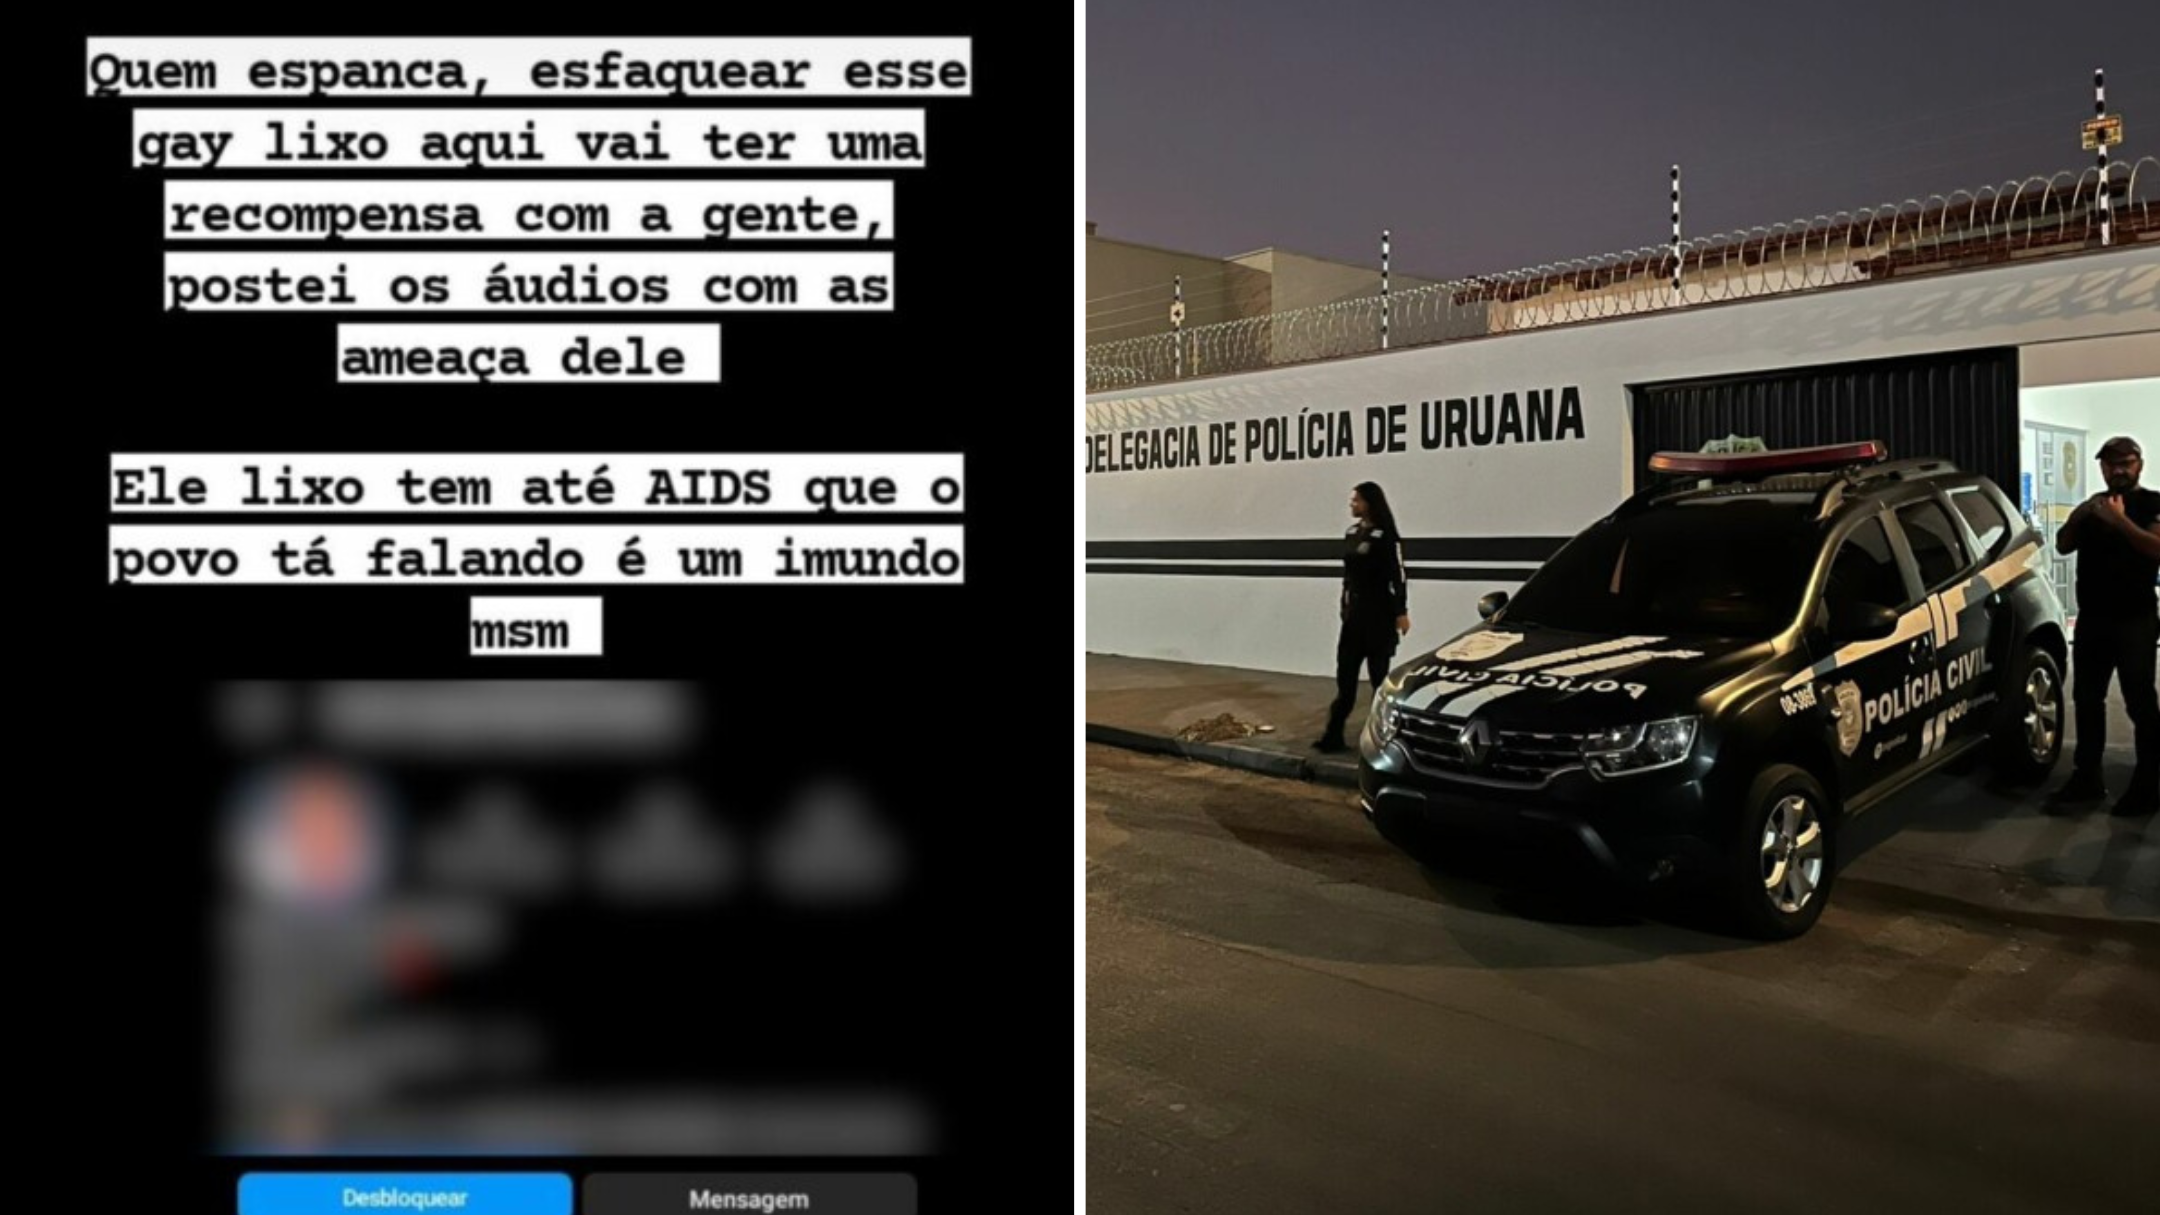 Duas mulheres são presas em Uruana após postarem mensagens homofóbicas no Instagram